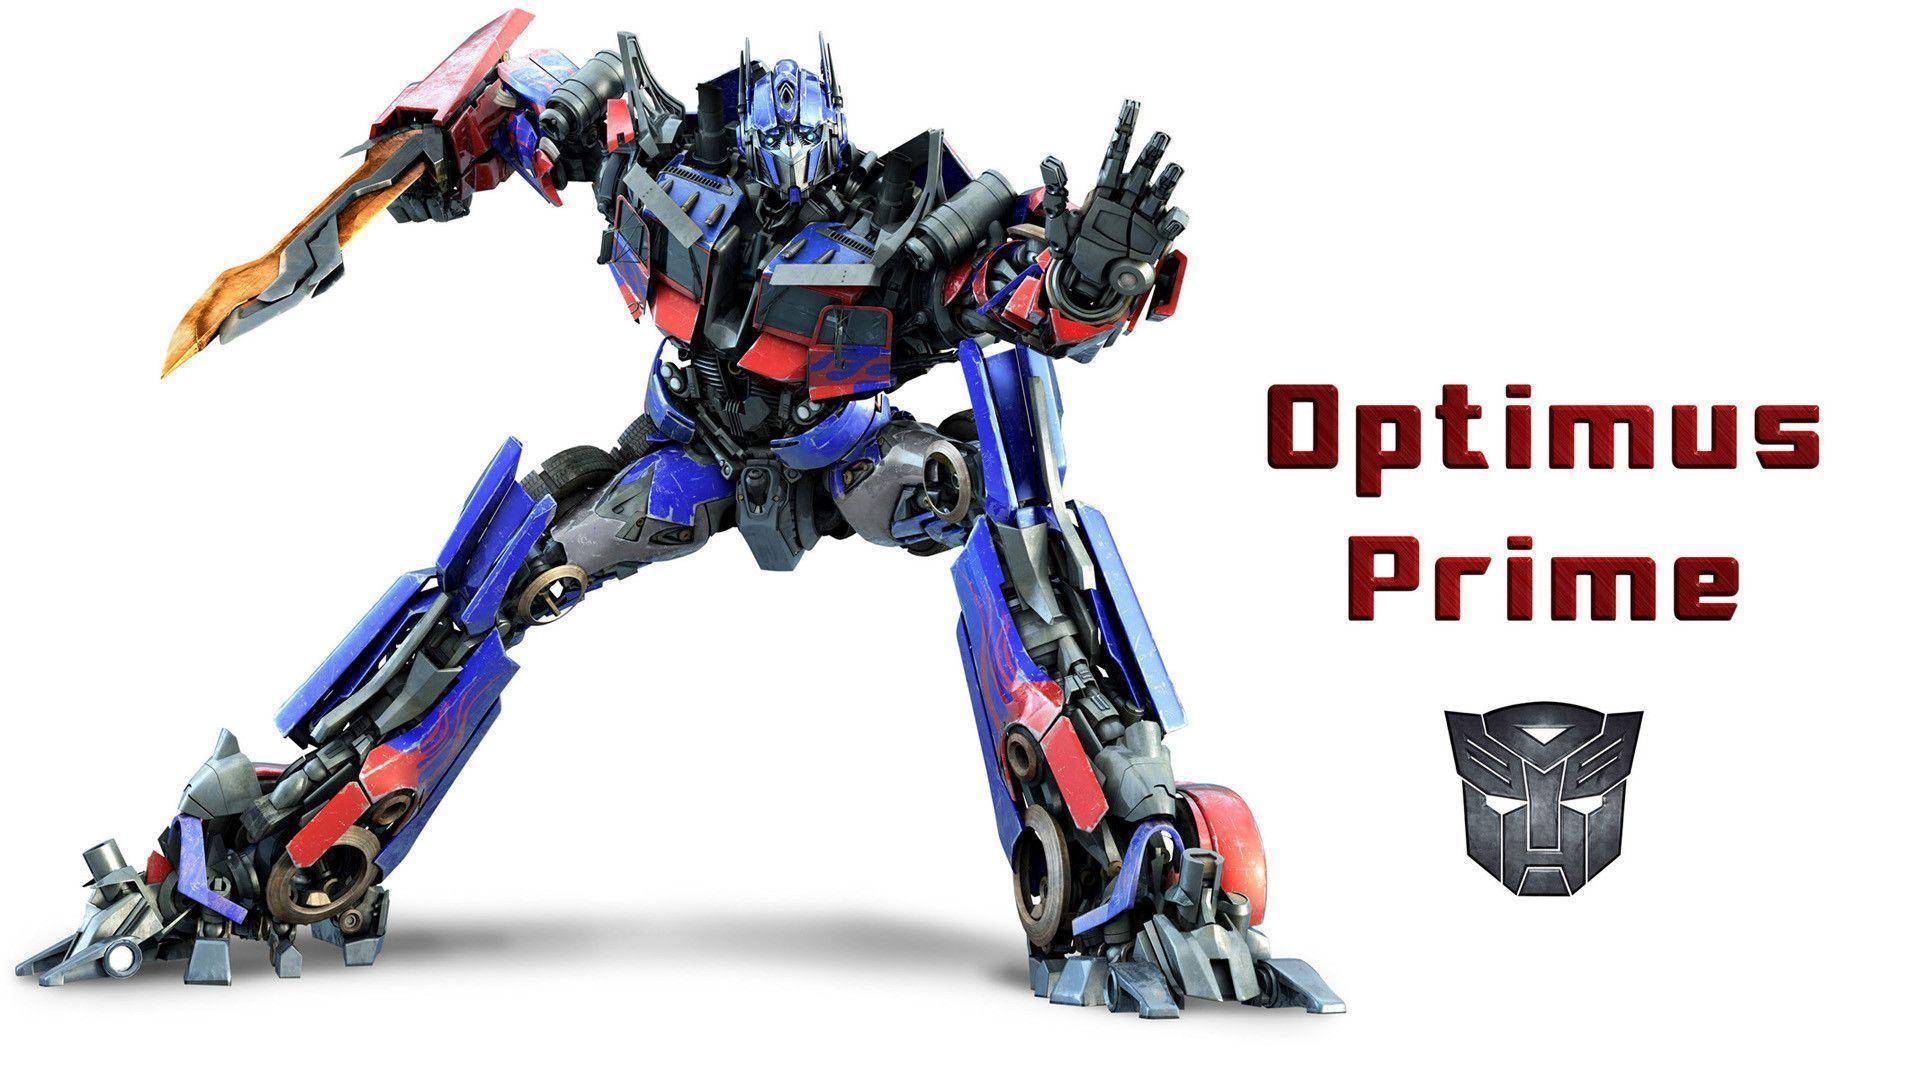 Transformers Optimus Prime wallpaper